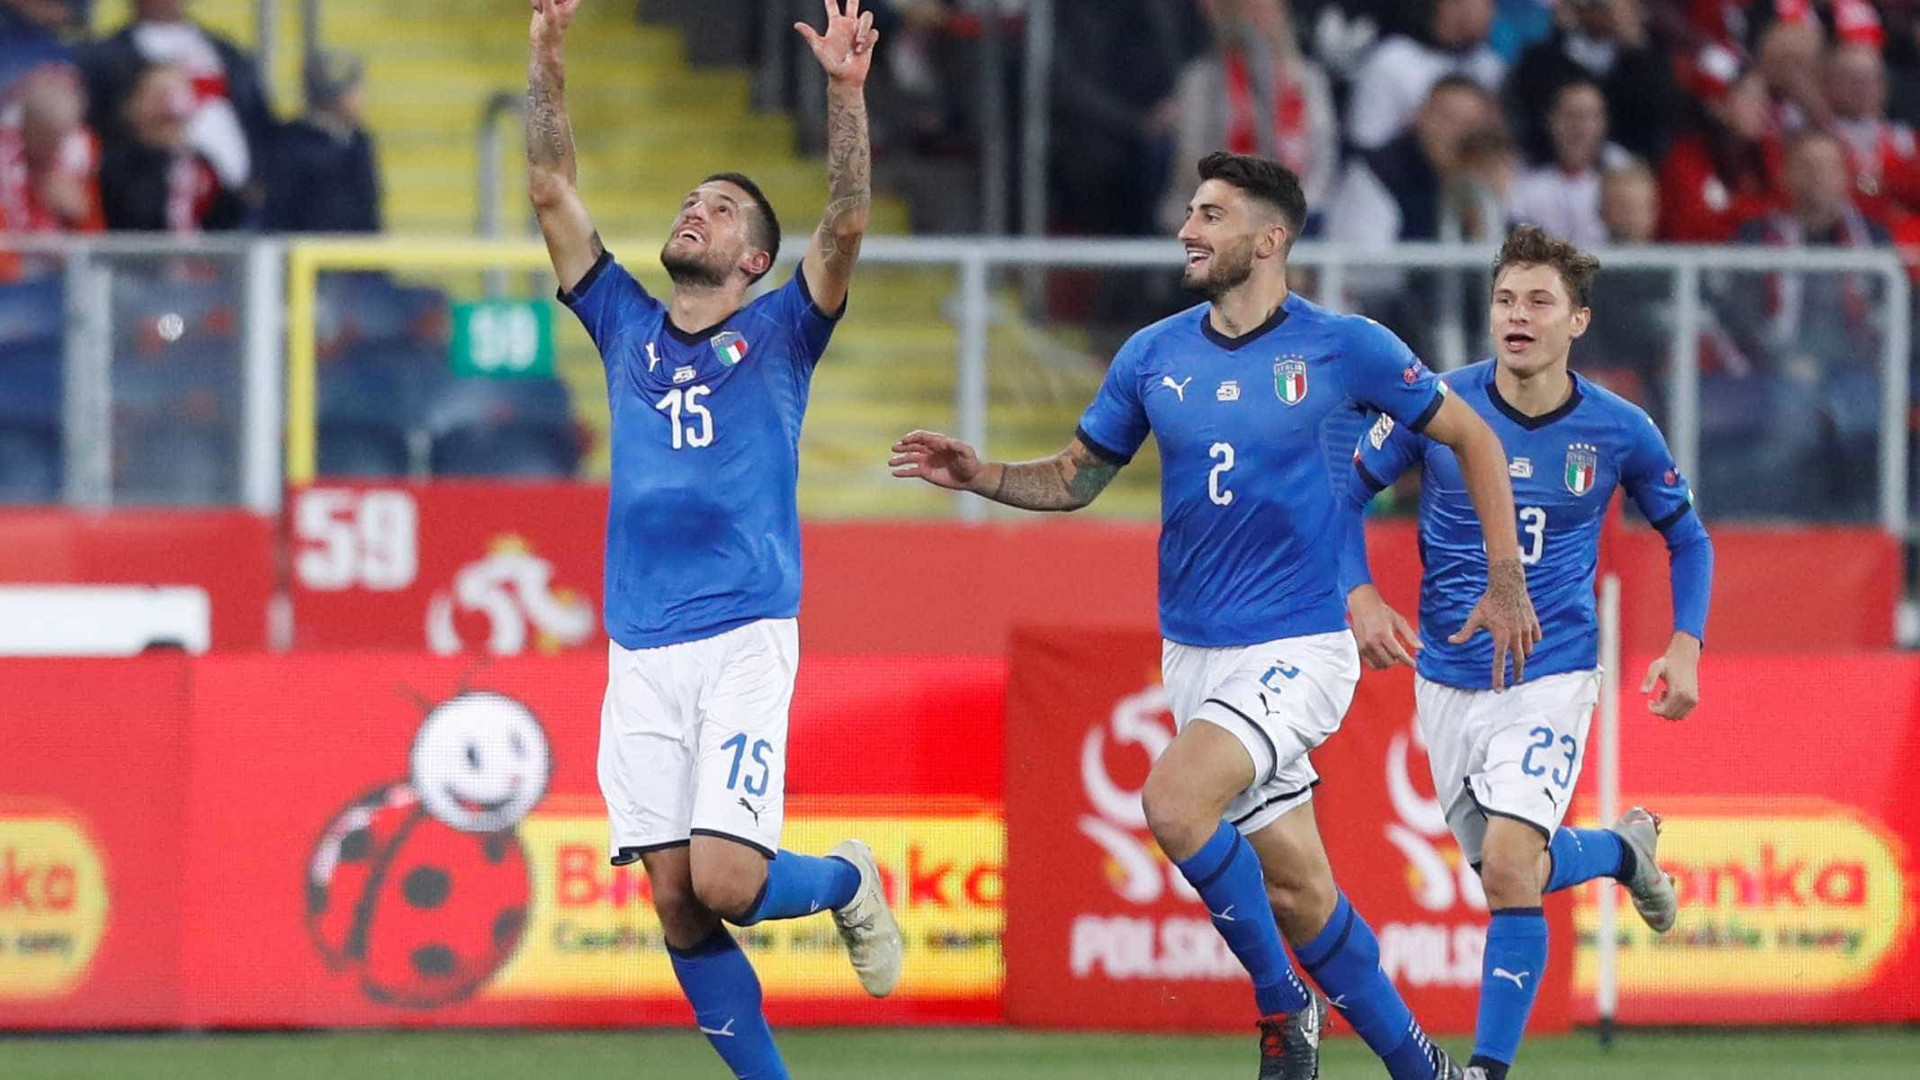 Itália vence Polônia com gol nos acréscimos pela Liga das Nações
